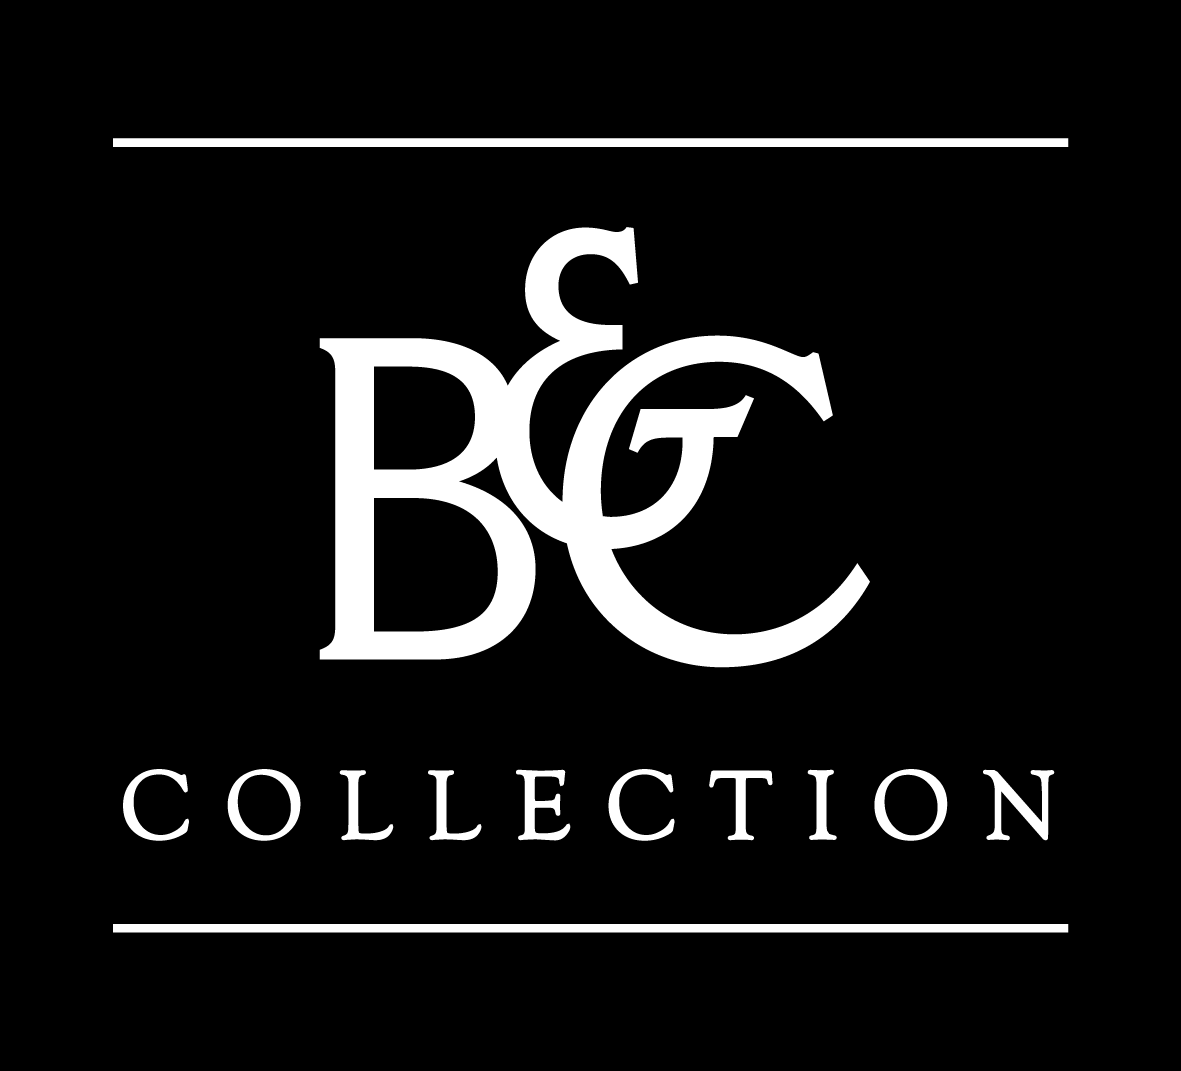 B c collection. B&C collection лого. B C collection футболка. BC collection бренд.